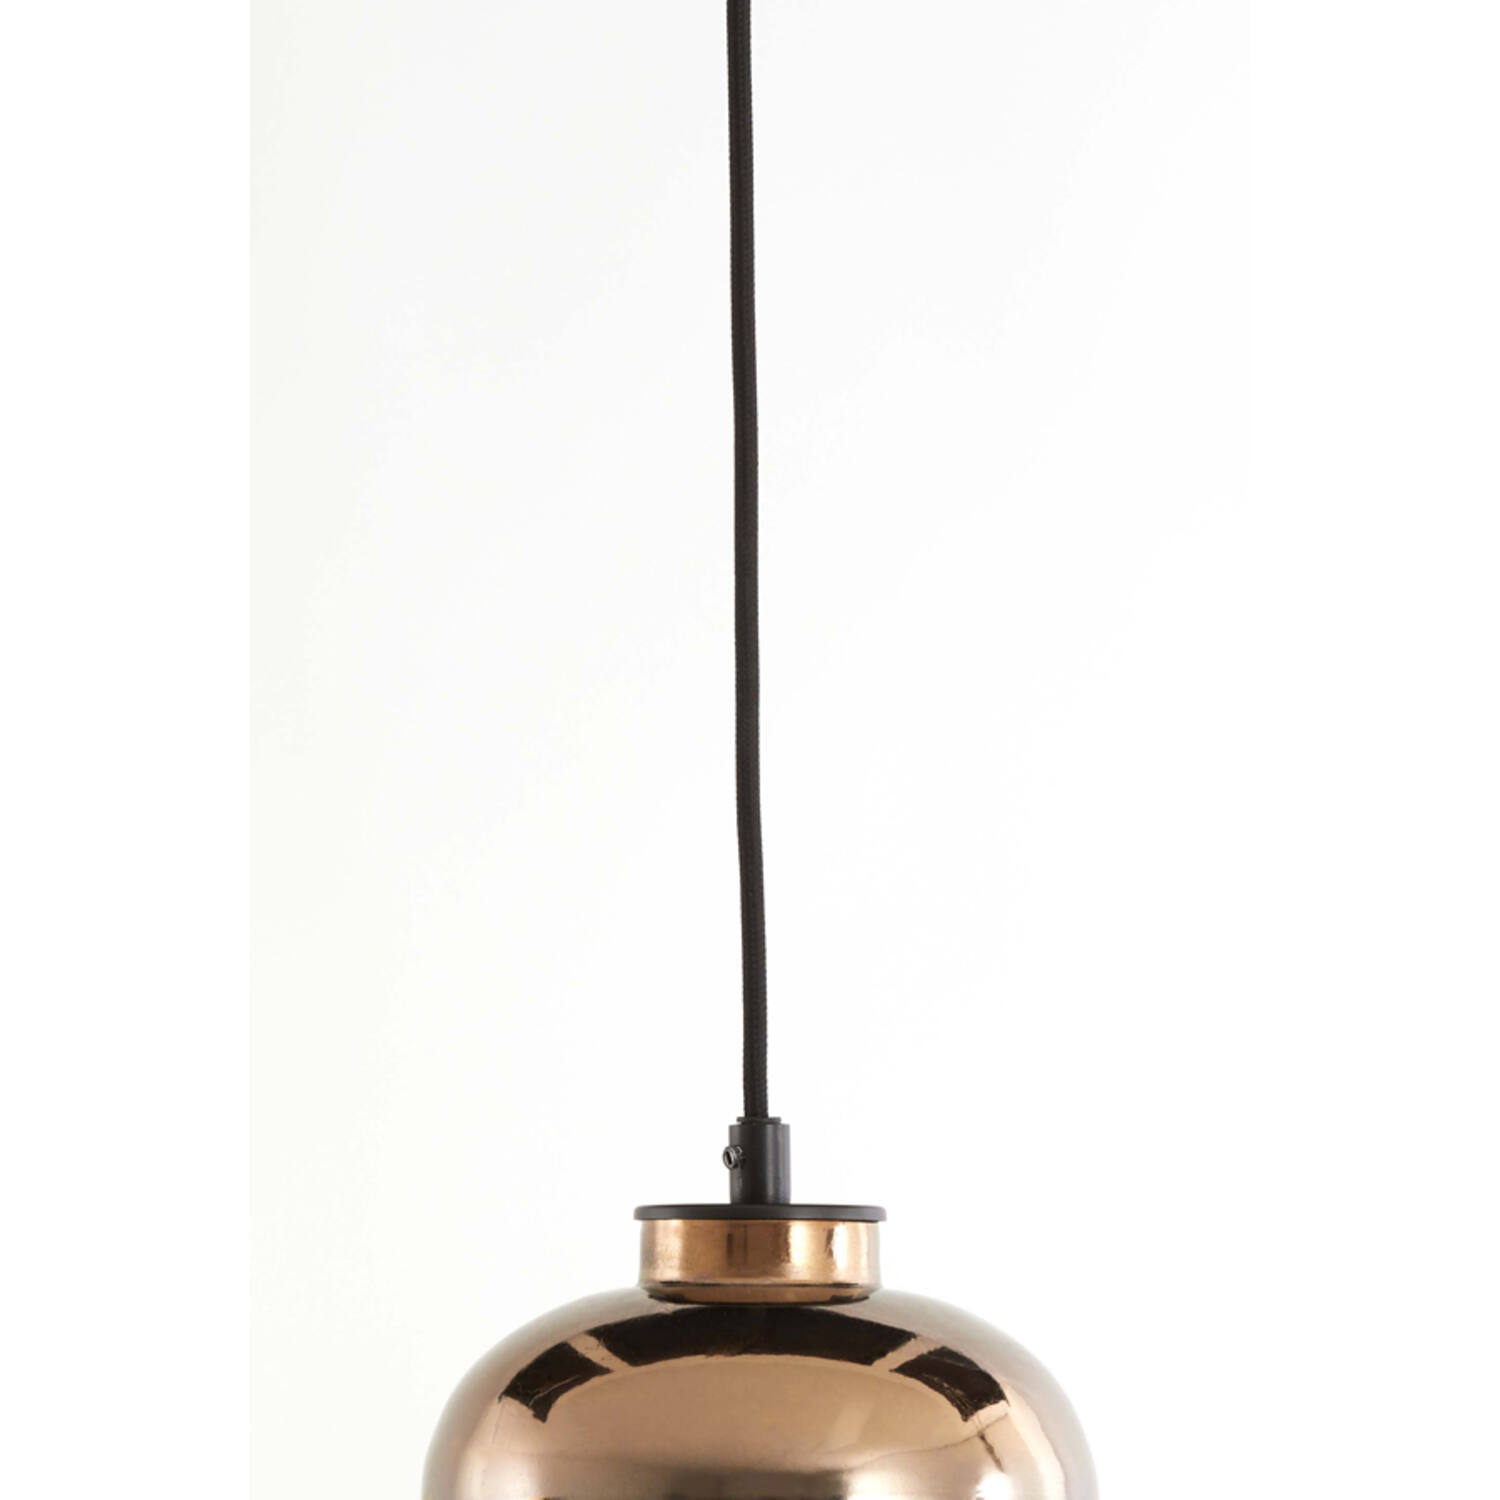 Lampe à suspension 30 cm réglable rétro couleur cuivre